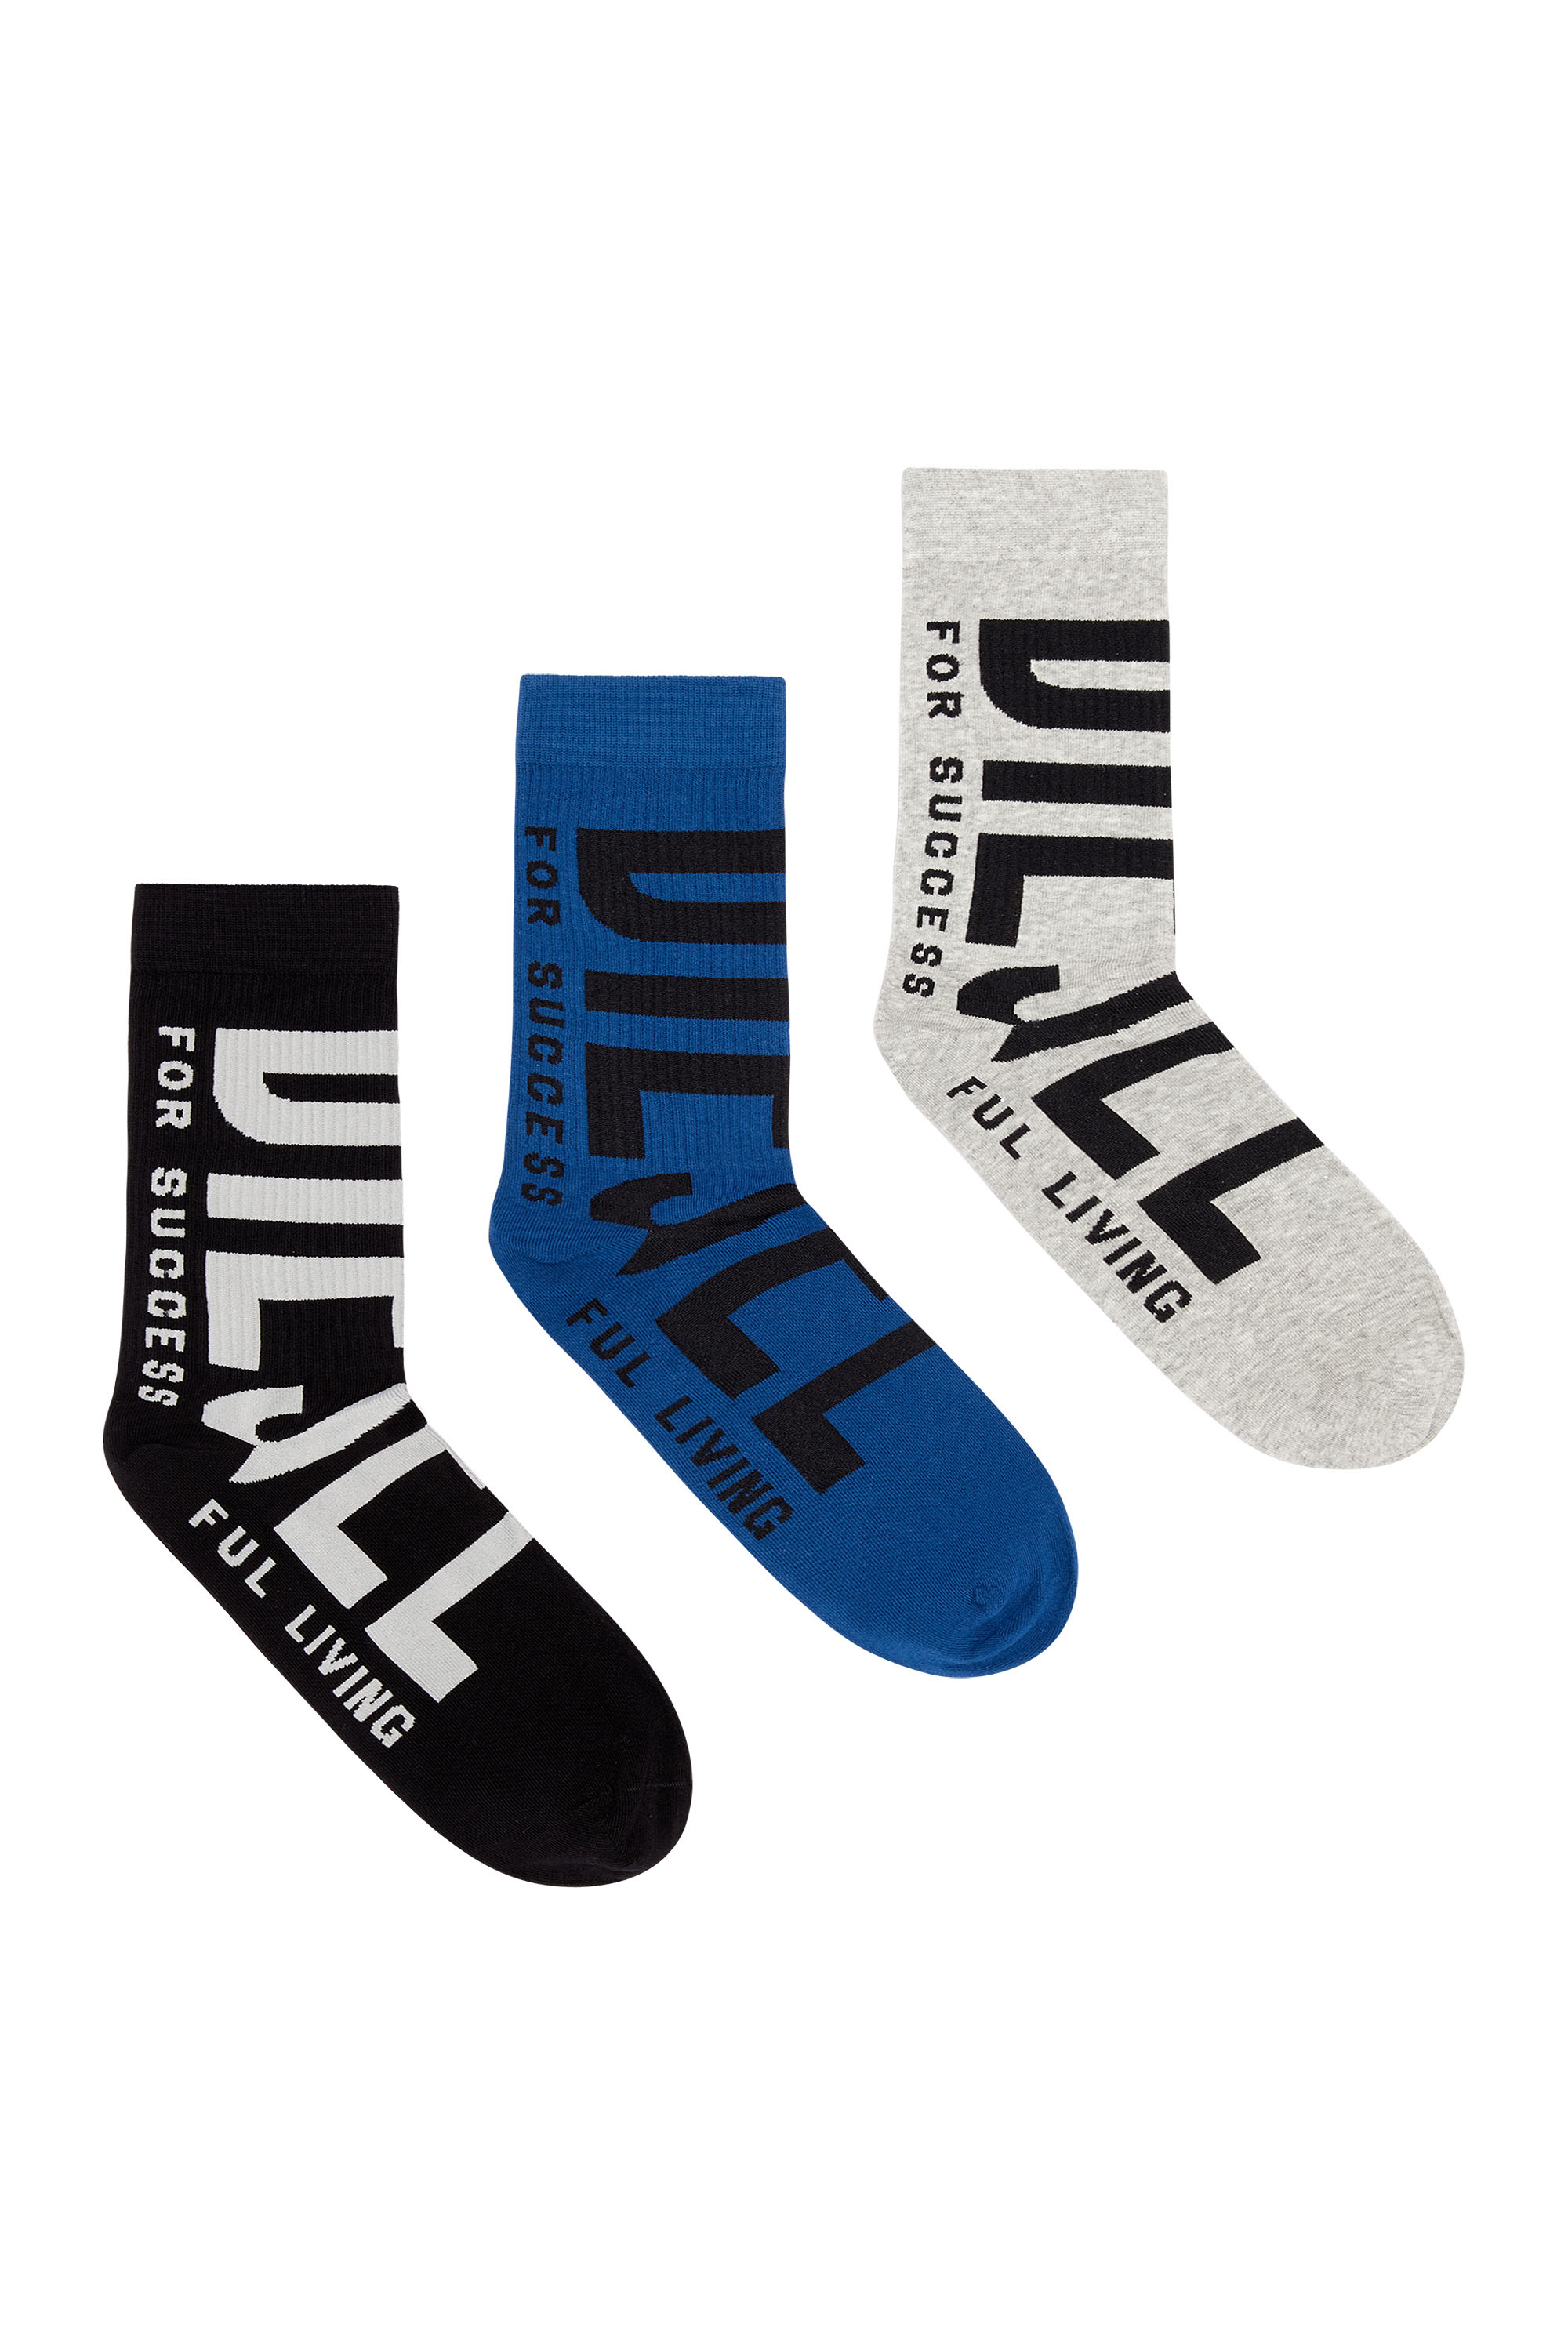 Chaussettes Elite Chaussettes de Nike pour homme - Jusqu'à -15